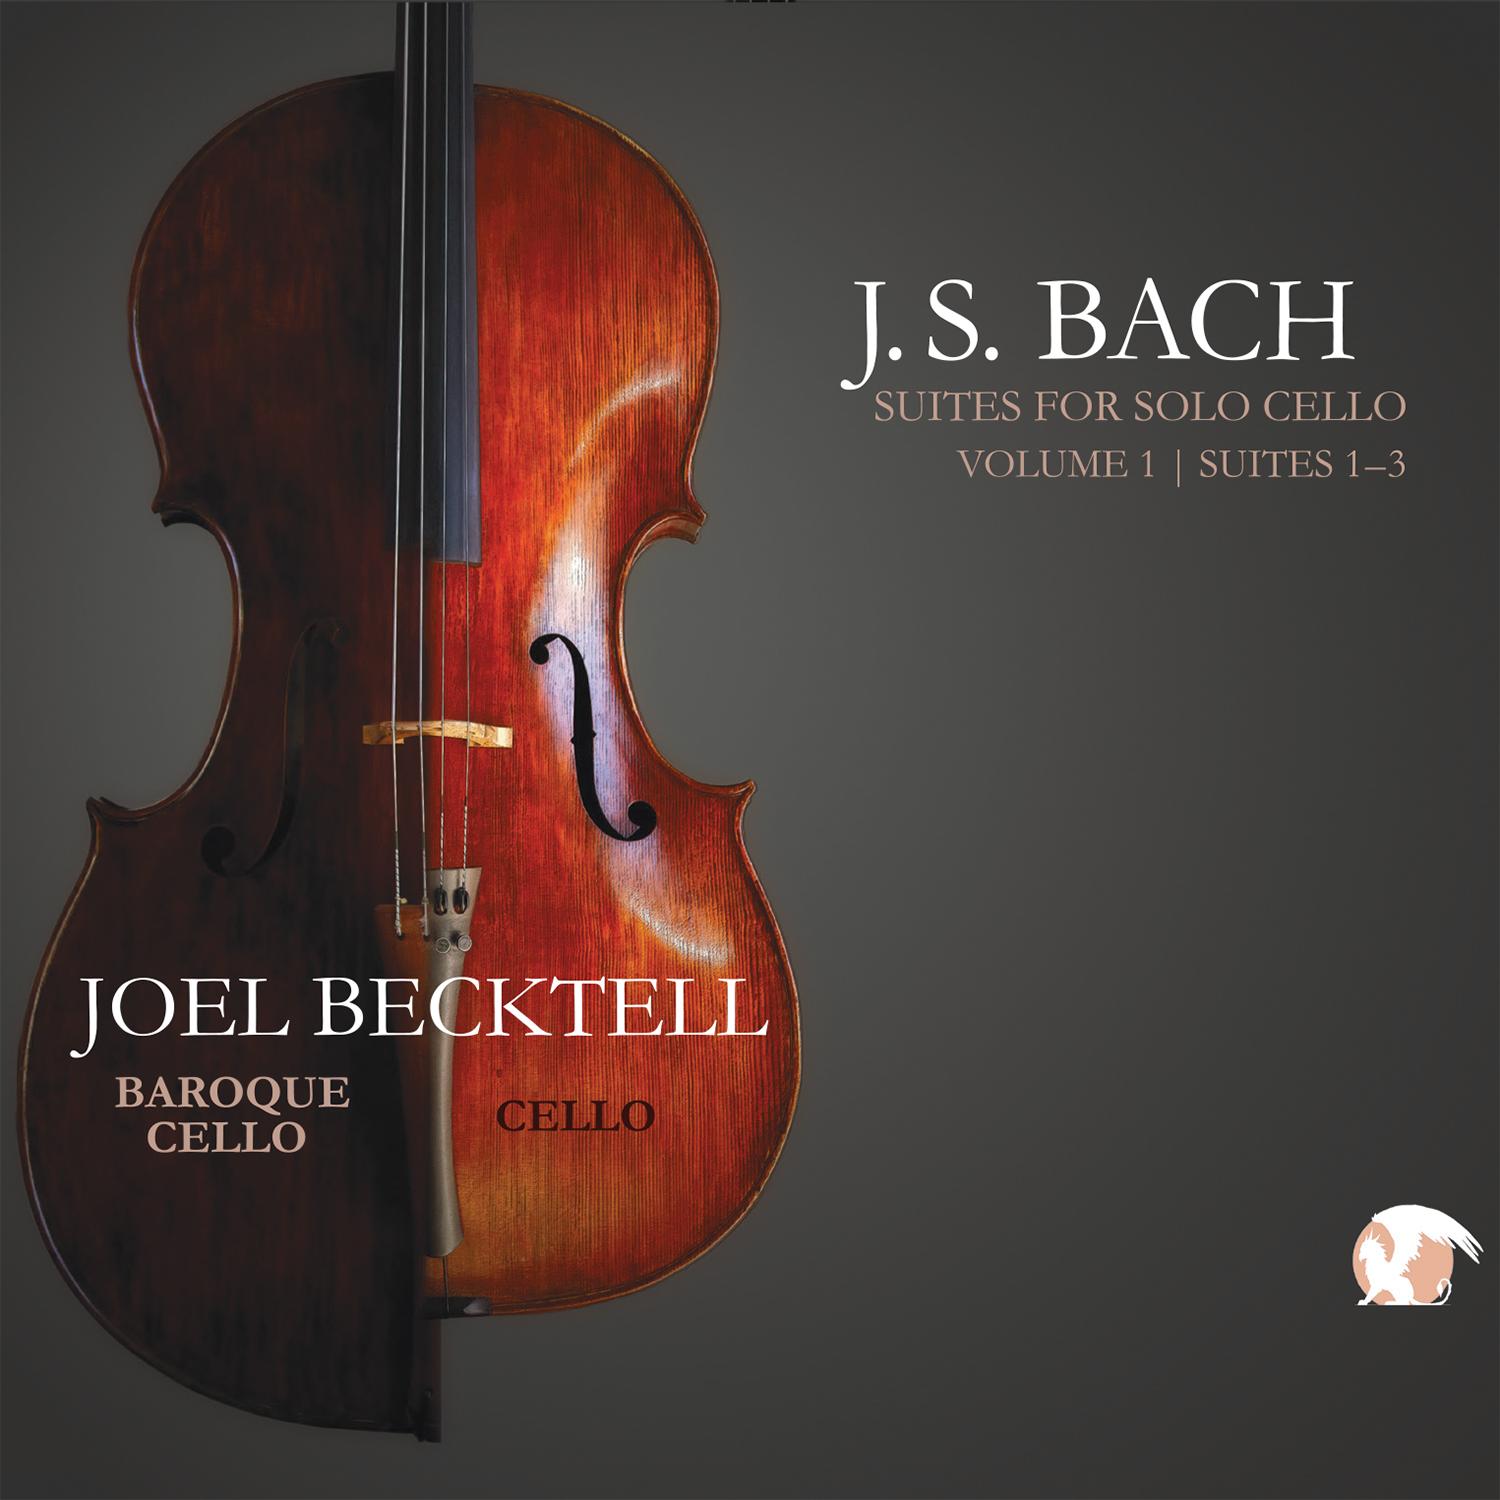 J.S. Bach Suites for Solo Cello, Vol. 1